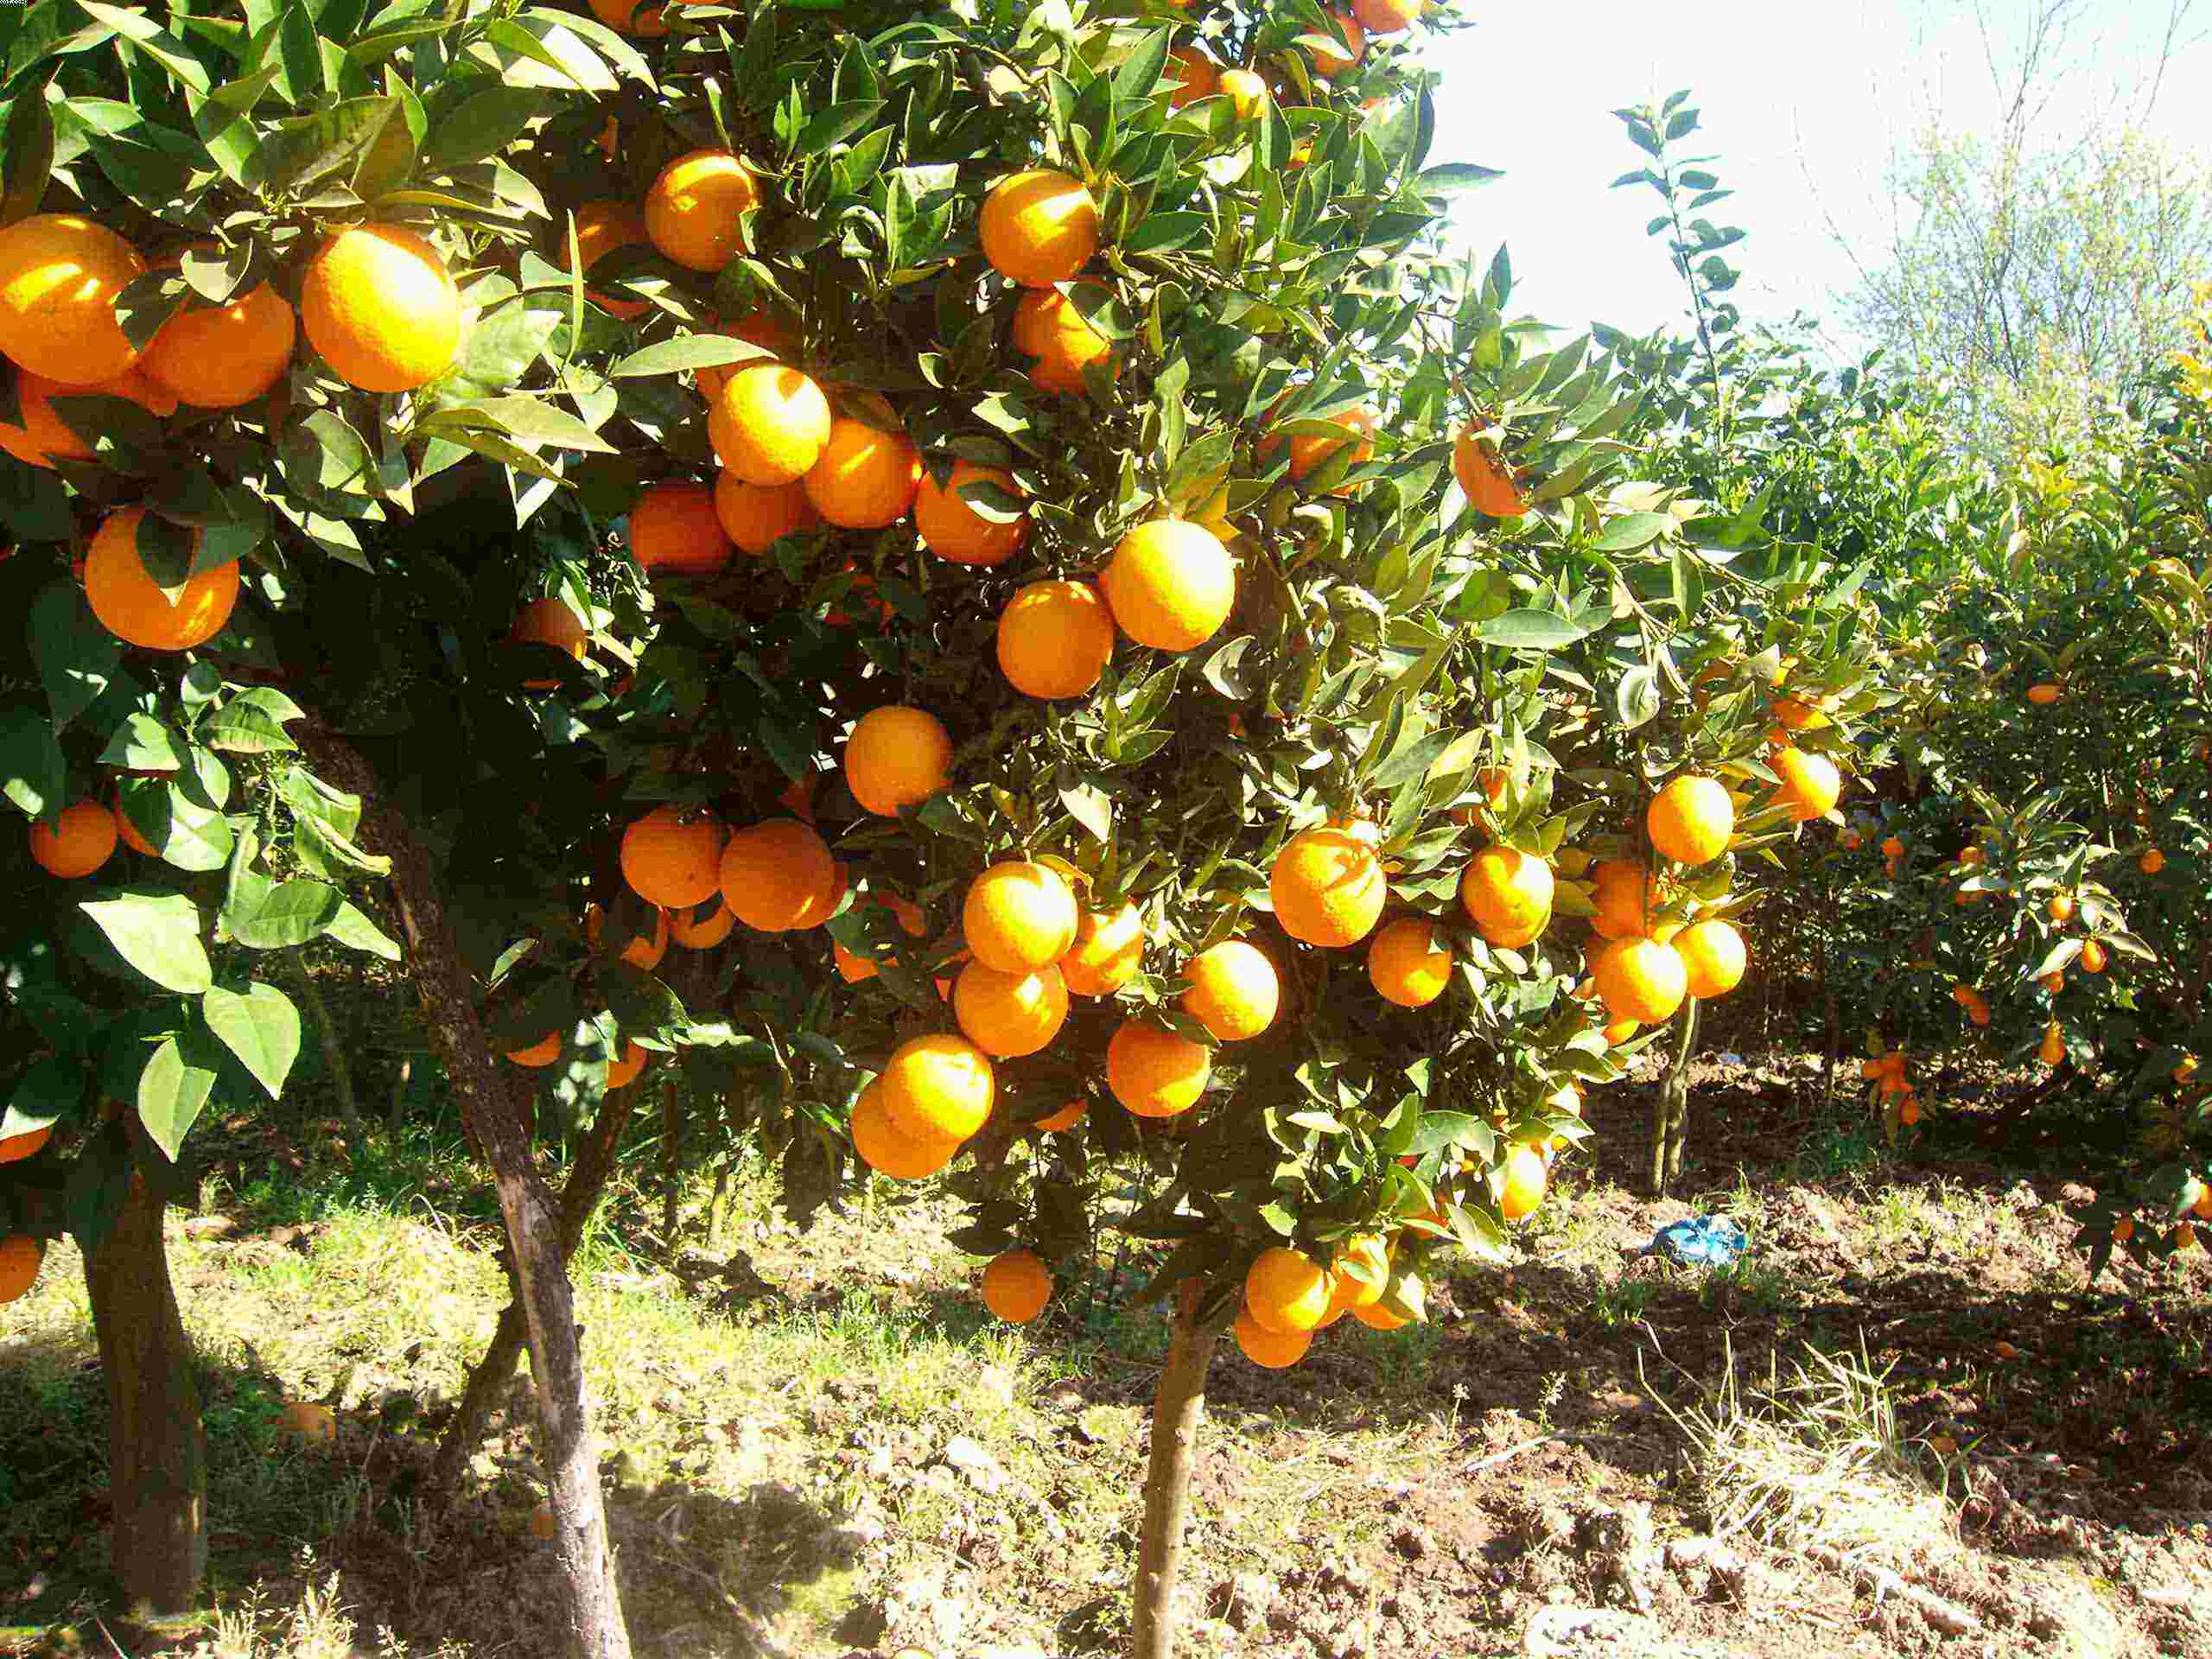 قیمت پرتقال در باغ ٢٠٠٠ تومان؛ فروش در بازار ۲۰ هزار تومان